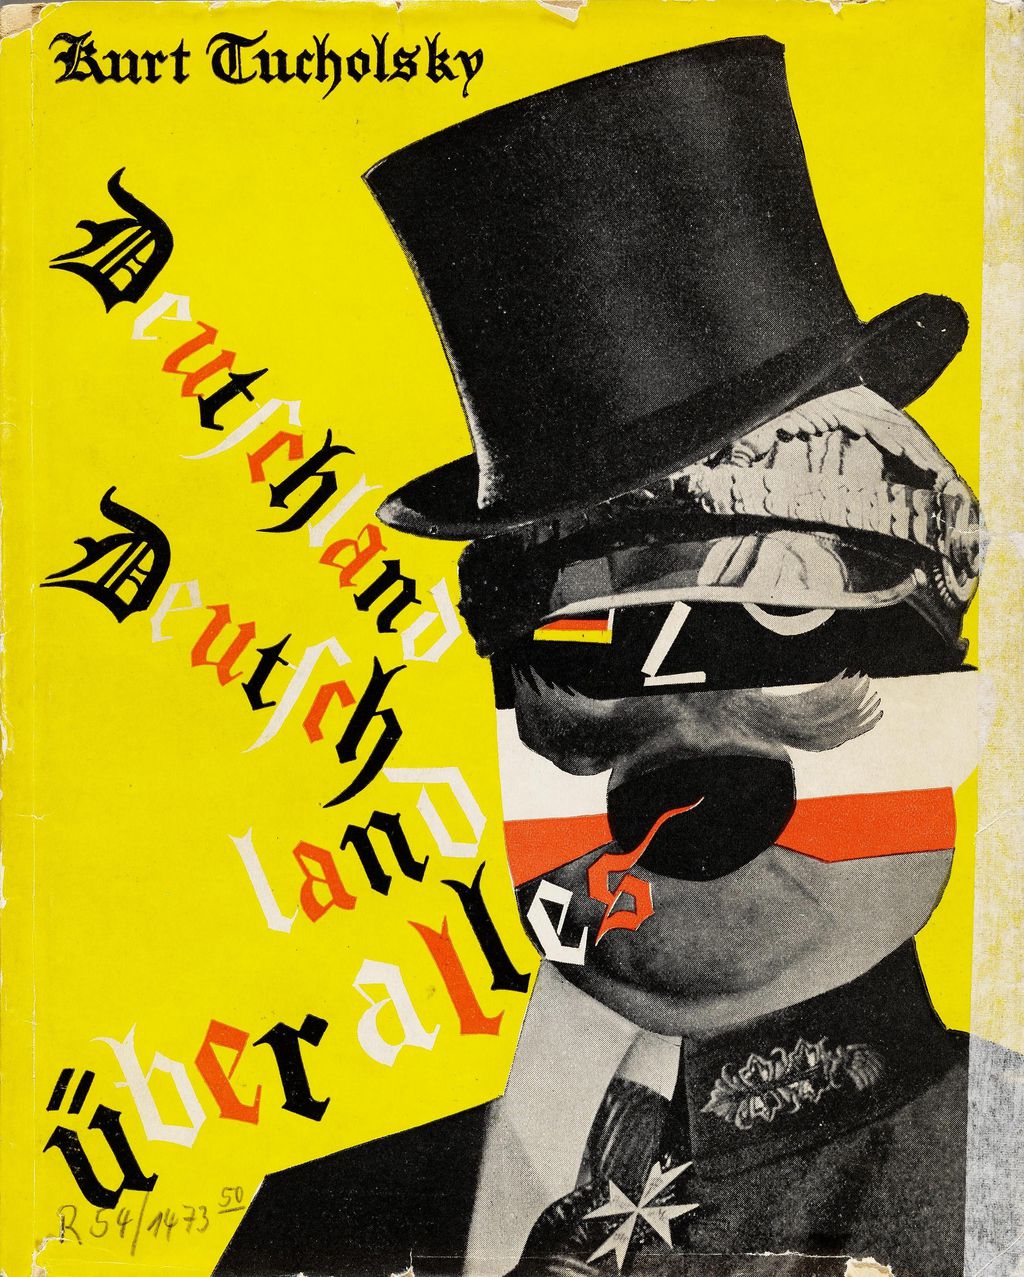 Buch: Tucholsky, Kurt "Deutschland, Deutschland über alles", 1929